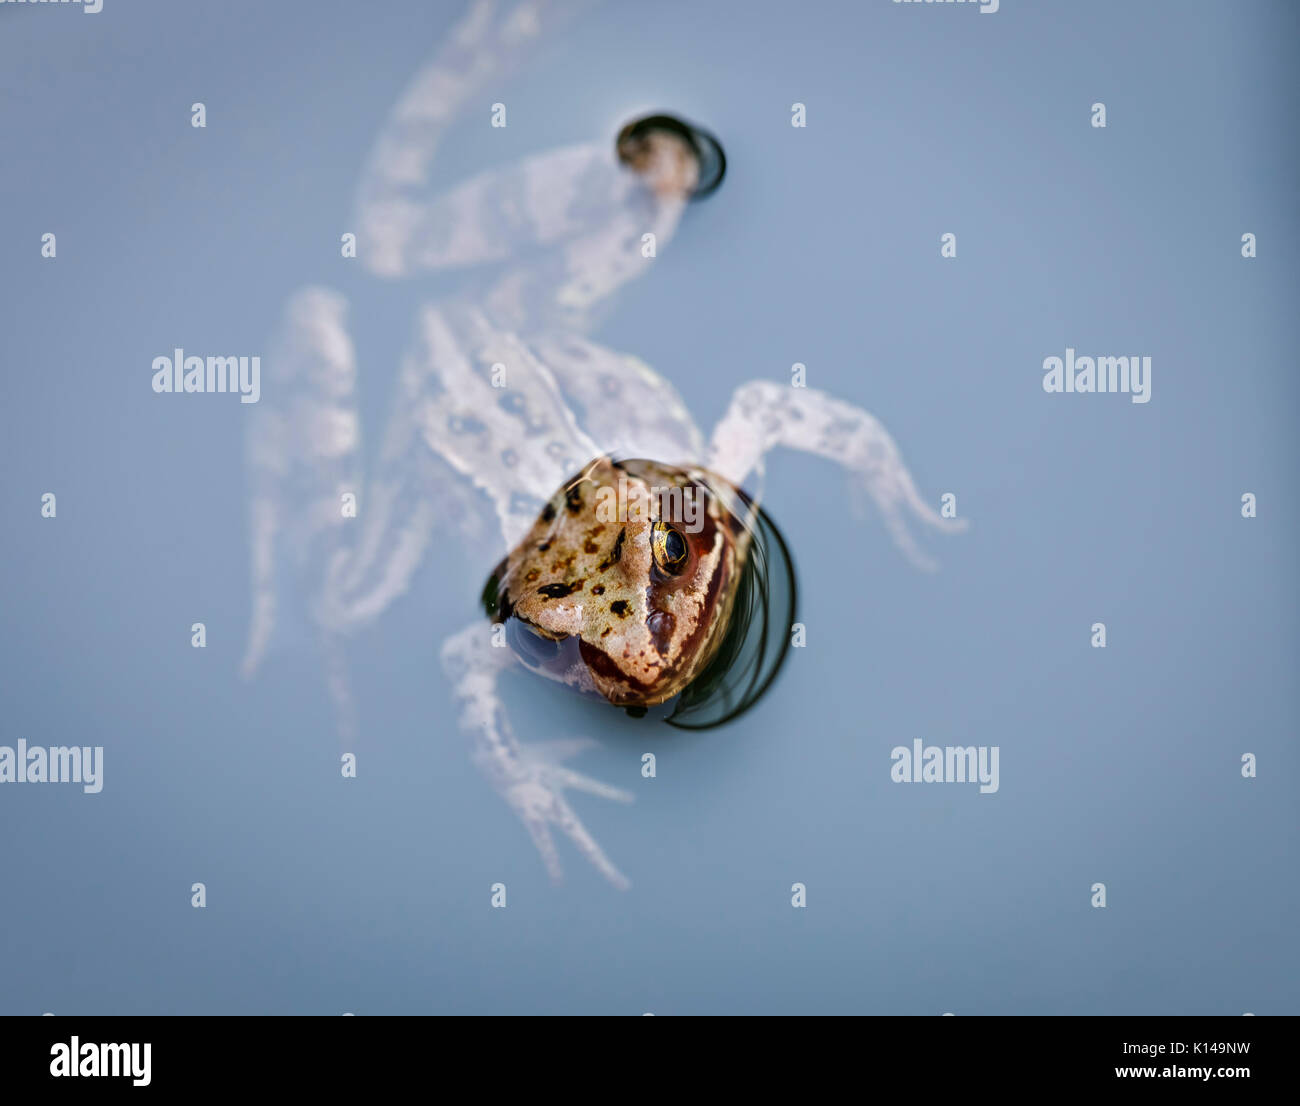 Tête d'un brun commun européen, la grenouille Rana temporaria, natation dans l'eau, Surrey, au sud-est de l'Angleterre, Royaume-Uni, close-up Banque D'Images